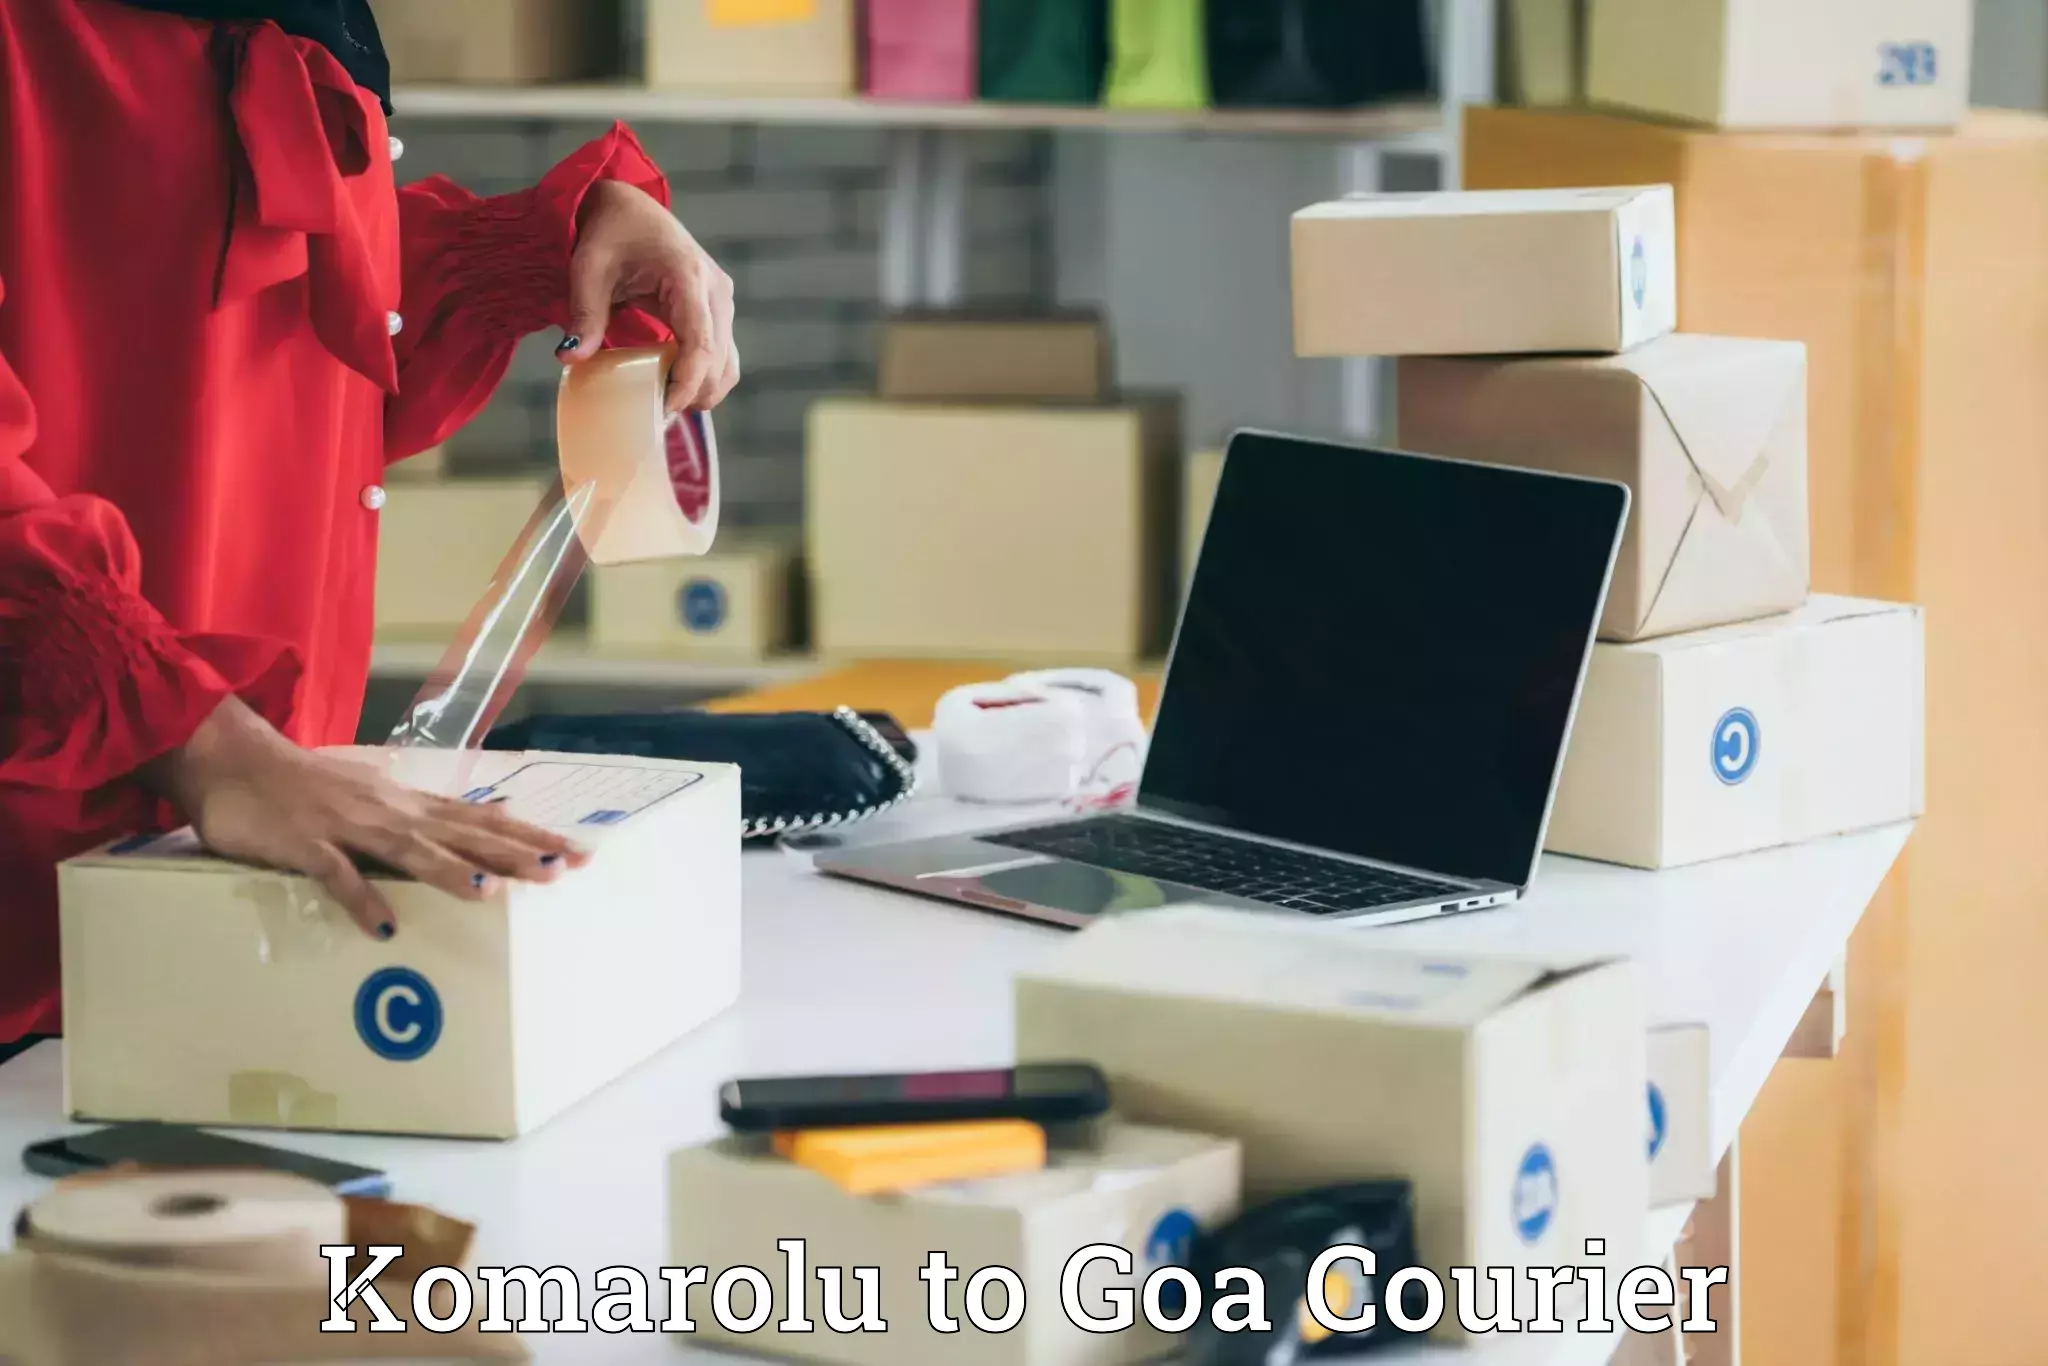 Courier service comparison Komarolu to Goa